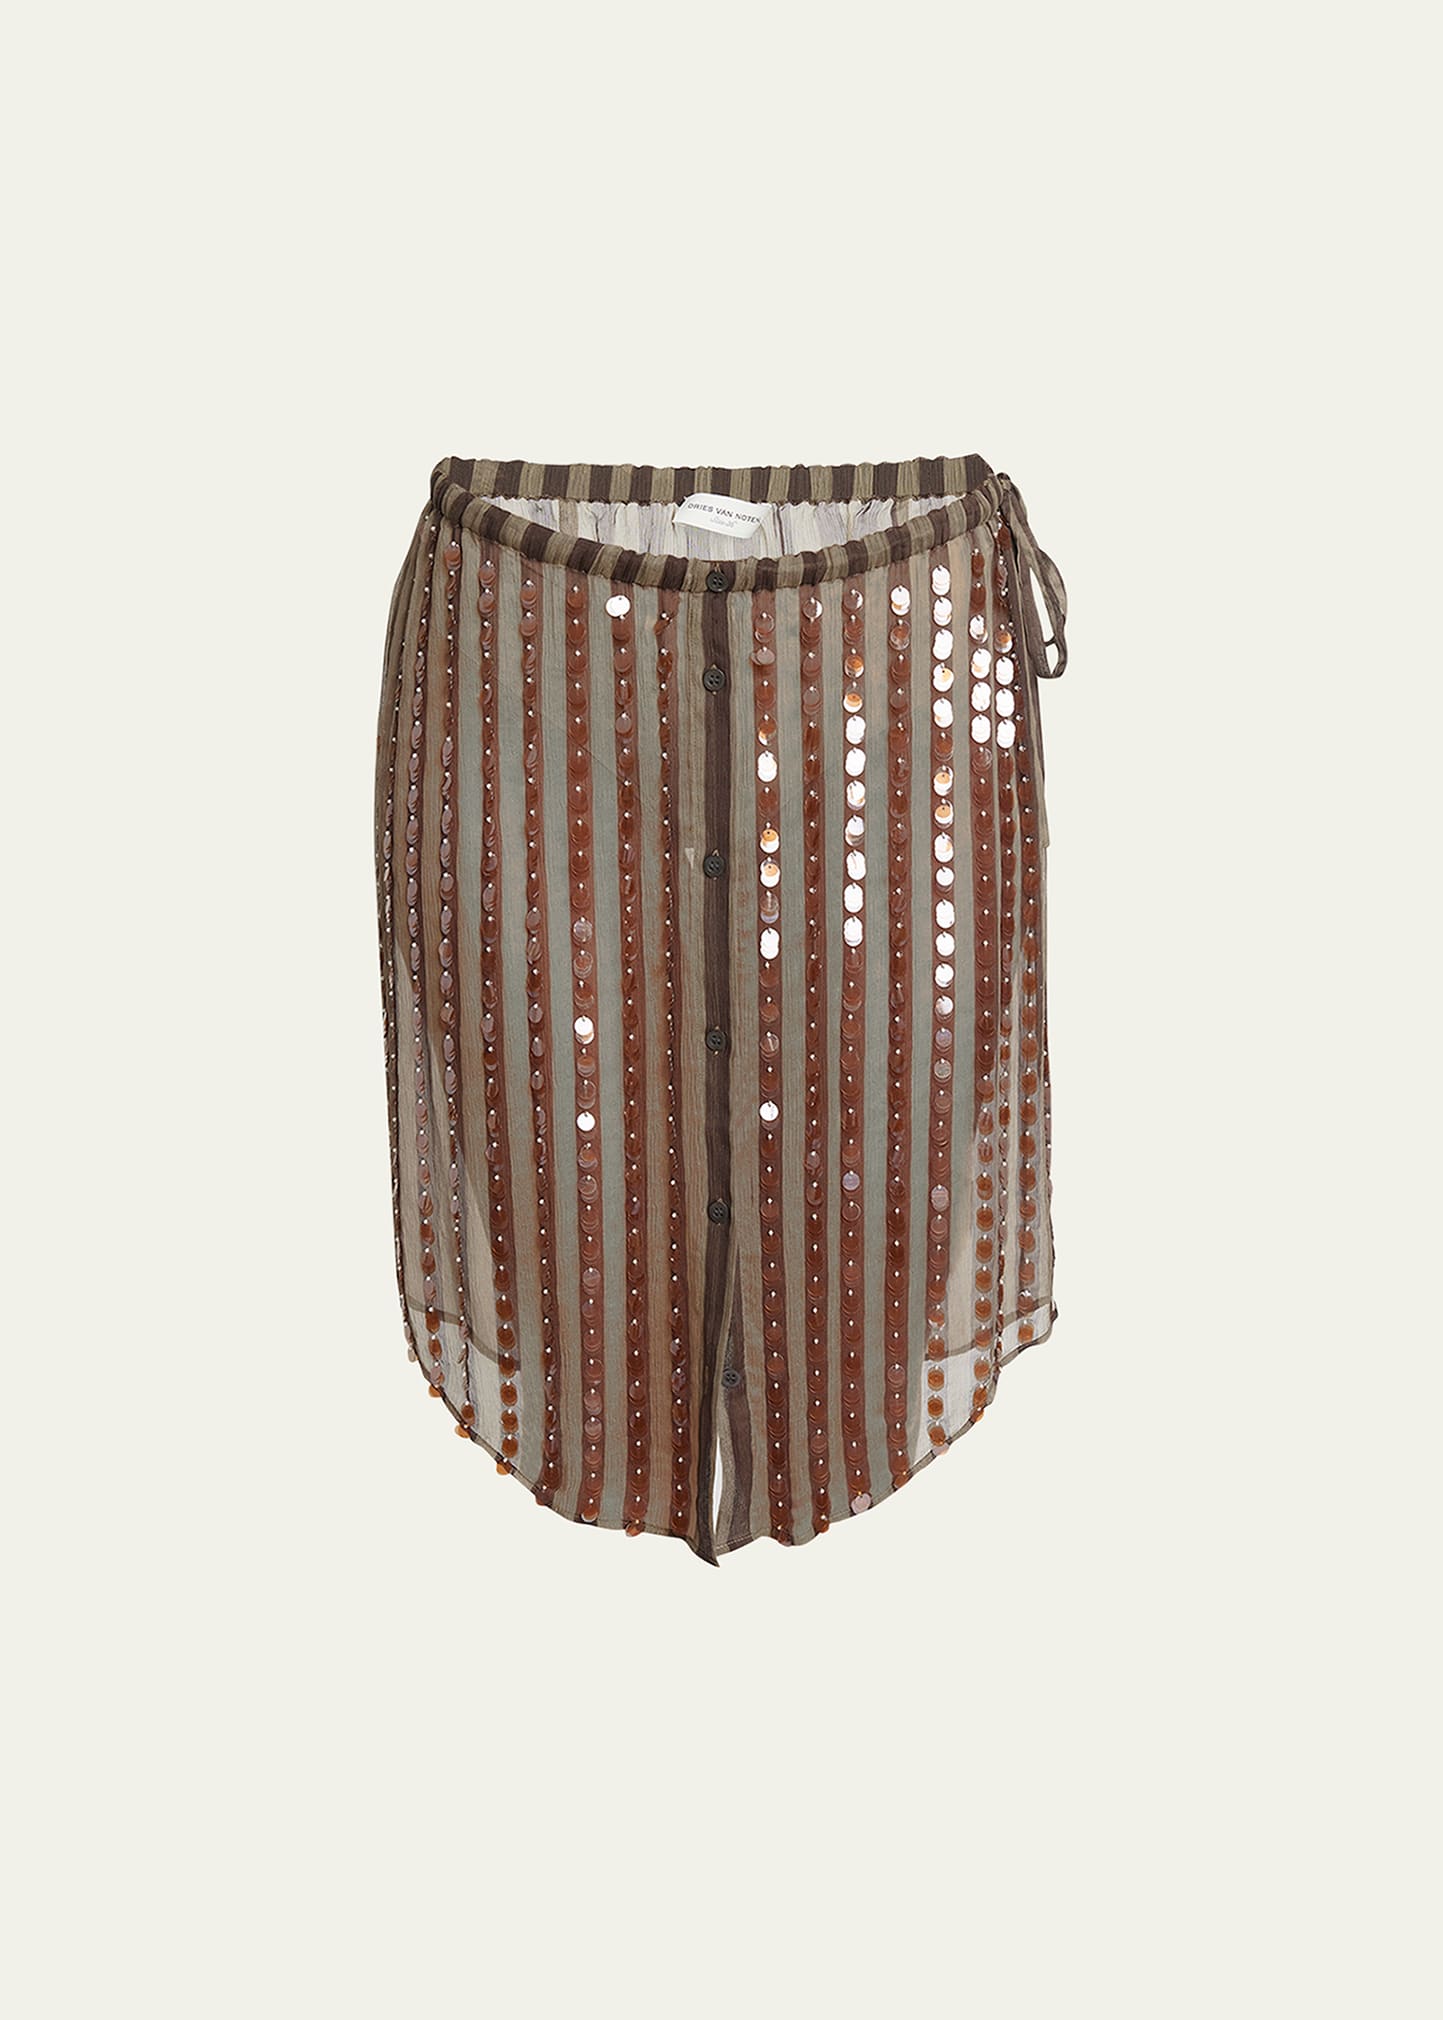 Dries Van Noten Shirty Embellished Sheer Midi Skirt In Brown